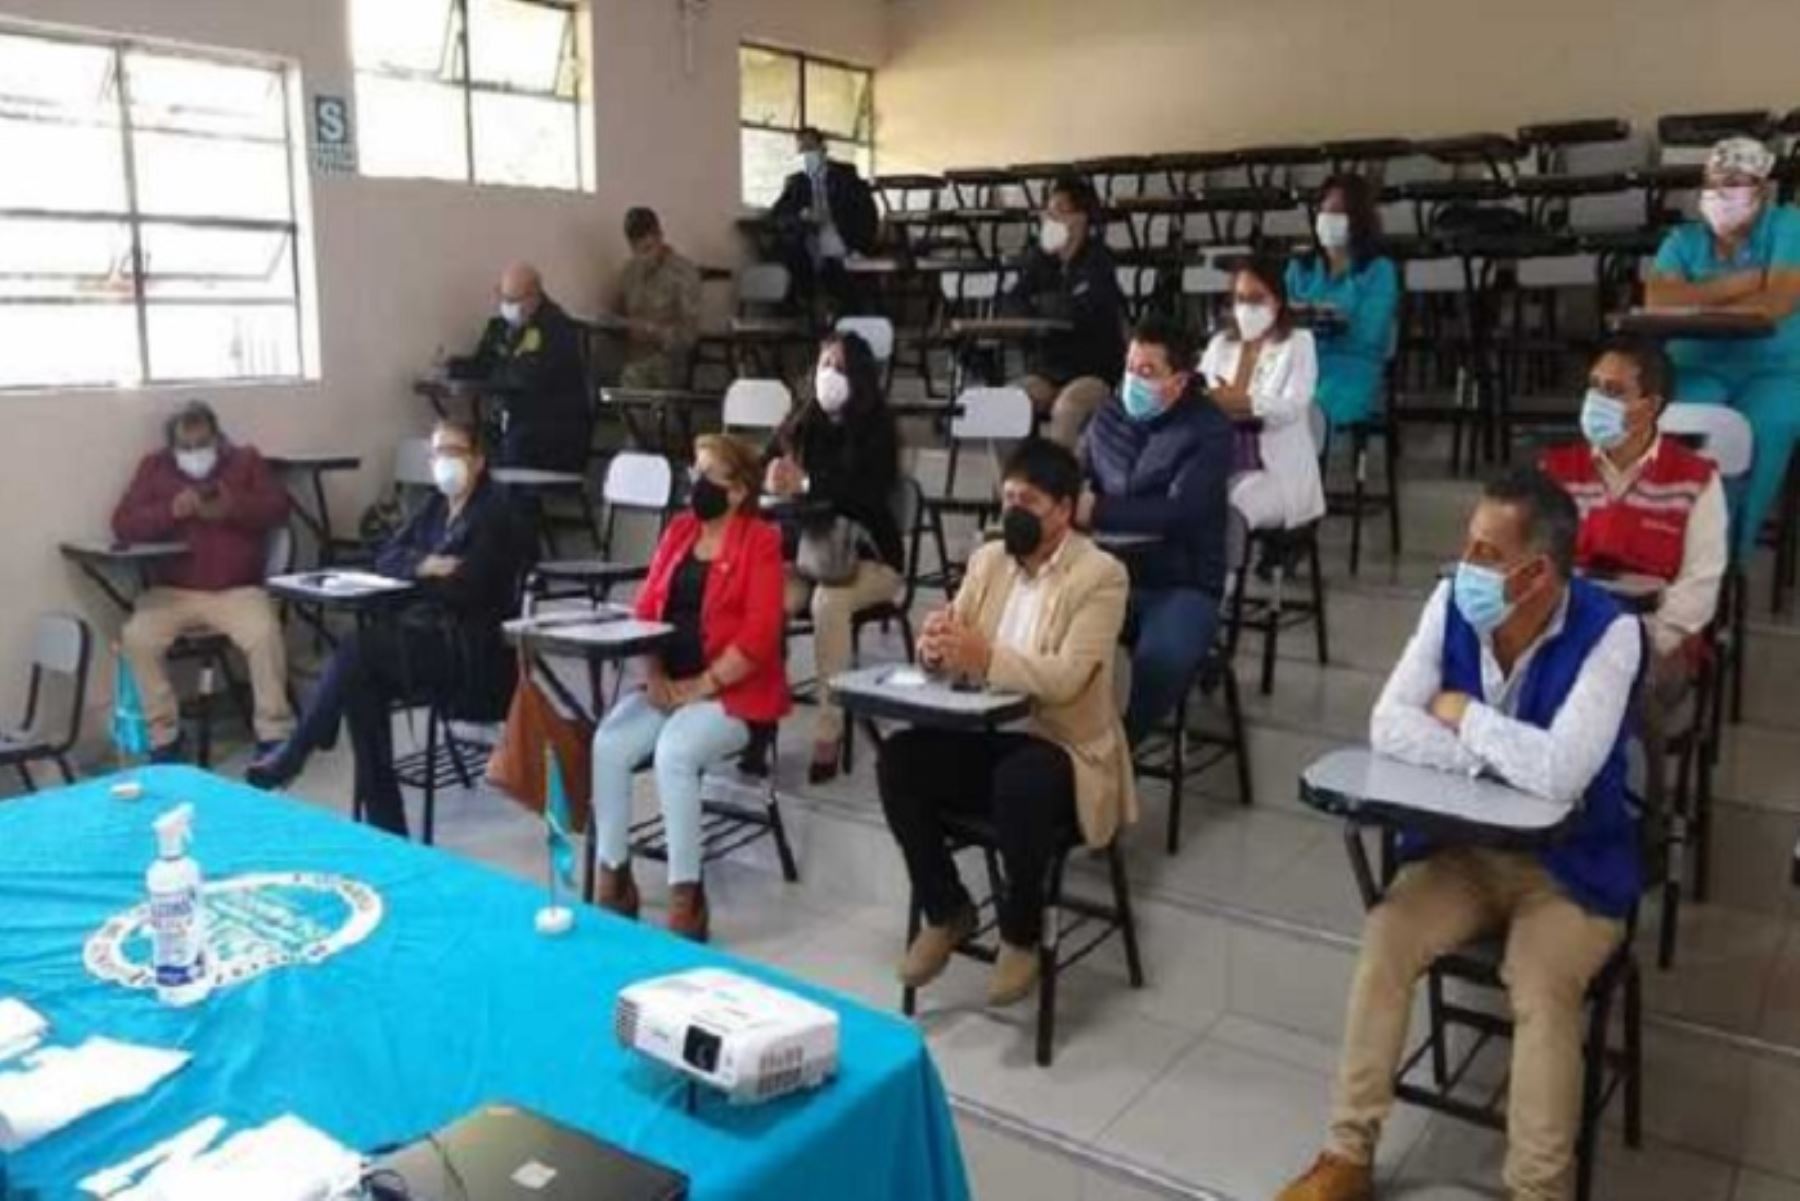 Participarán en esta nueva estrategia el Ejército Peruano, Red de Salud de Cajamarca, Municipalidad Provincial de Cajamarca, EsSalud, los programas sociales, Policía Nacional, colegios profesionales y la Universidad Nacional, entre otros.